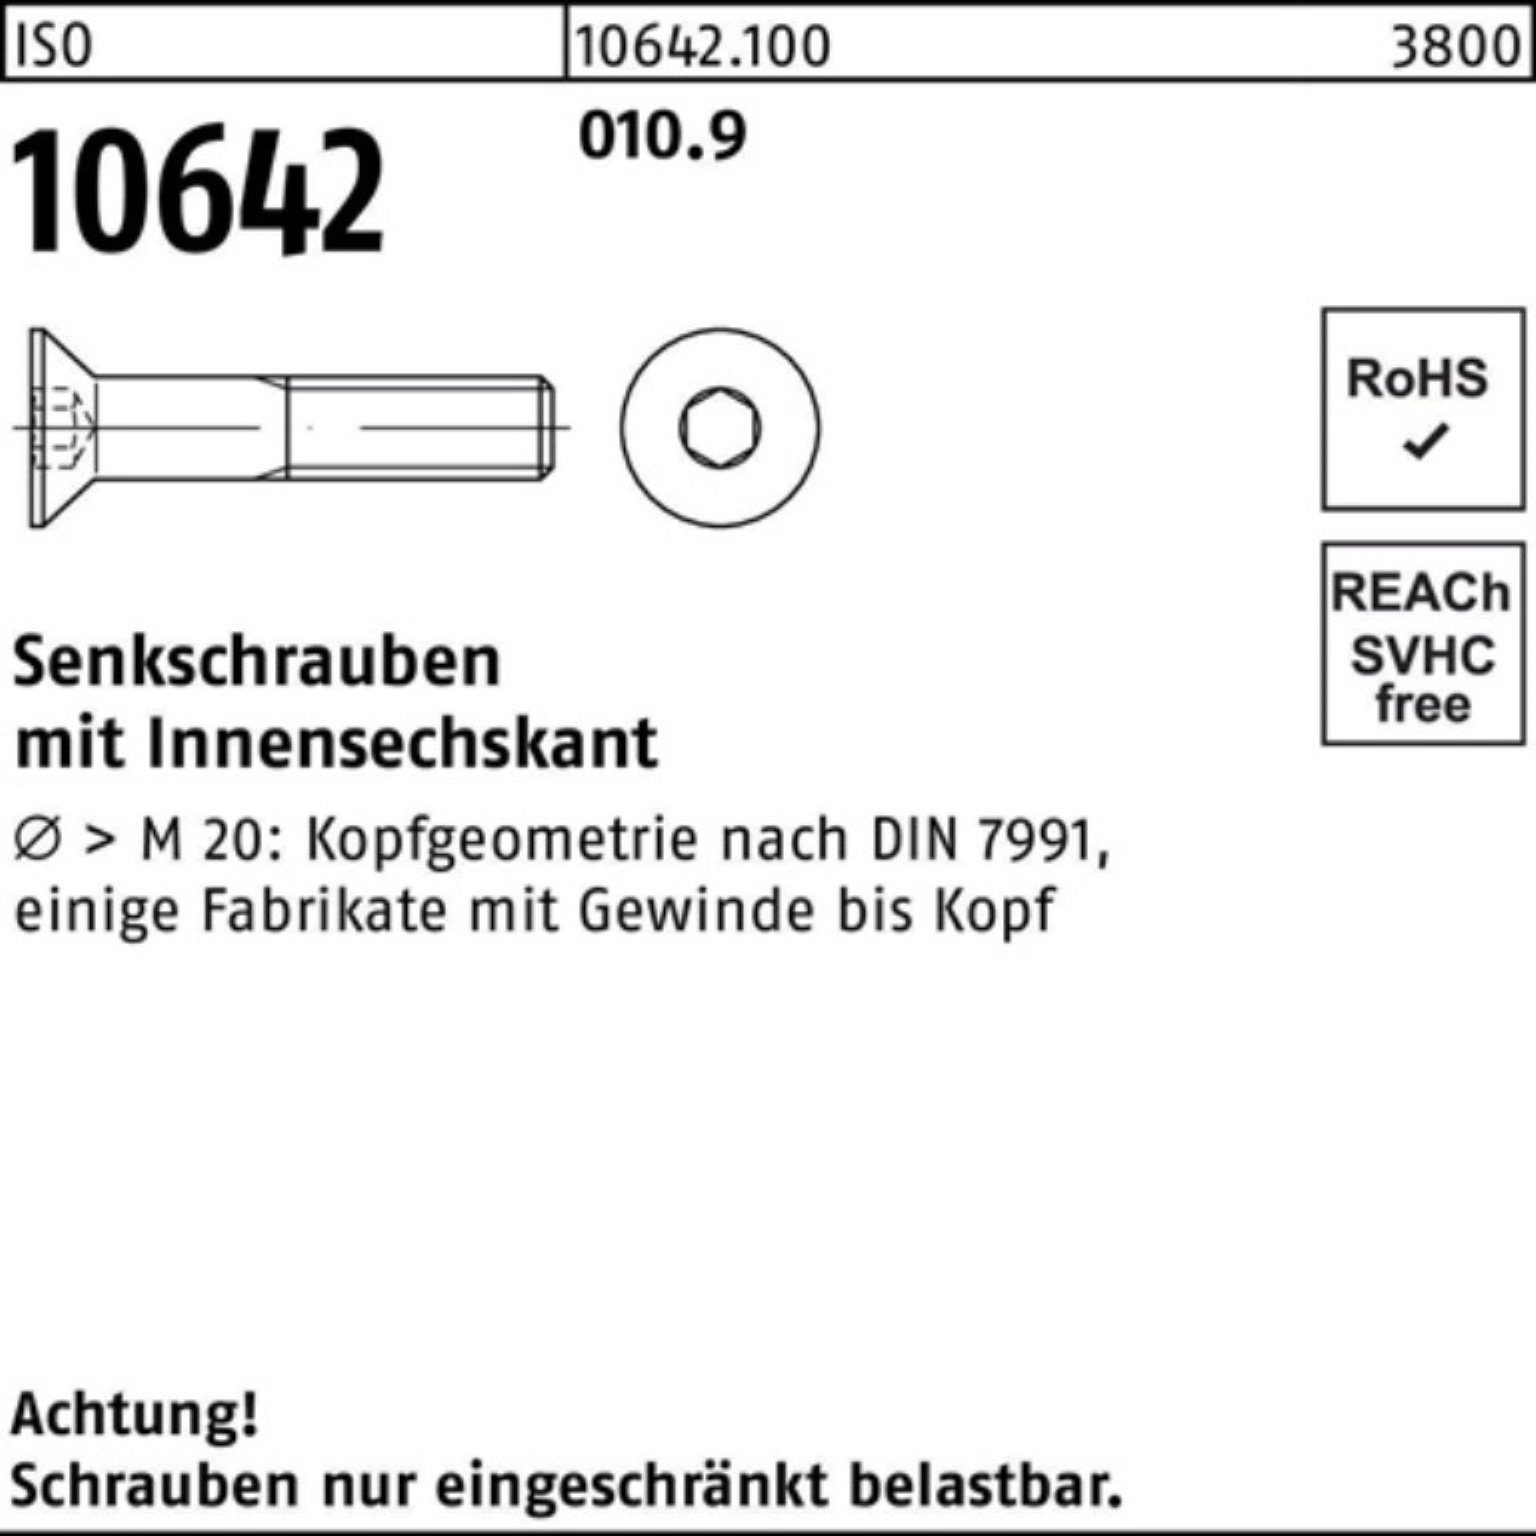 16 Innen-6kt IS Reyher Senkschraube ISO Pack 10642 010.9 Stück 500 Senkschraube 500er M4x